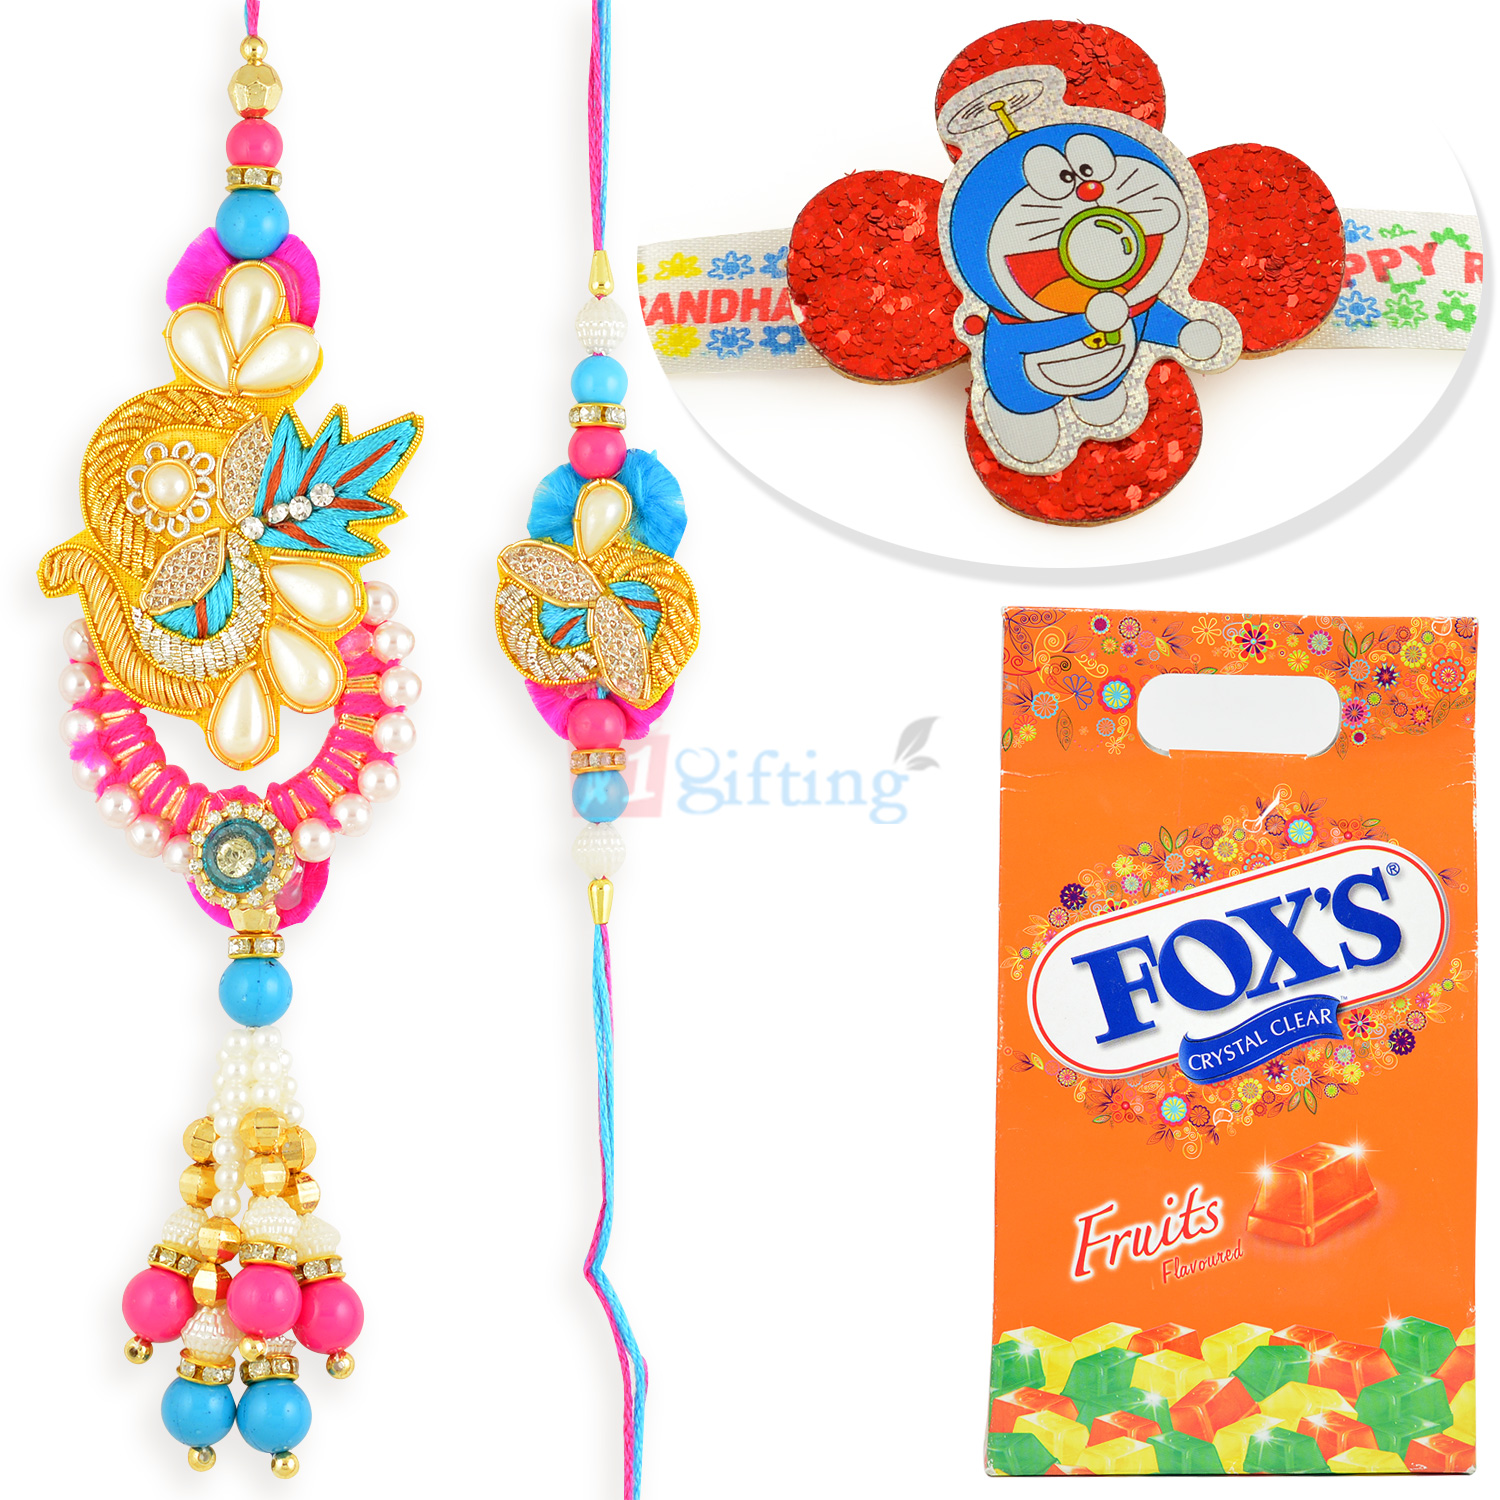 Foxs Fruits Chocolate with Zari Pair and Doraemon Kids Rakhi